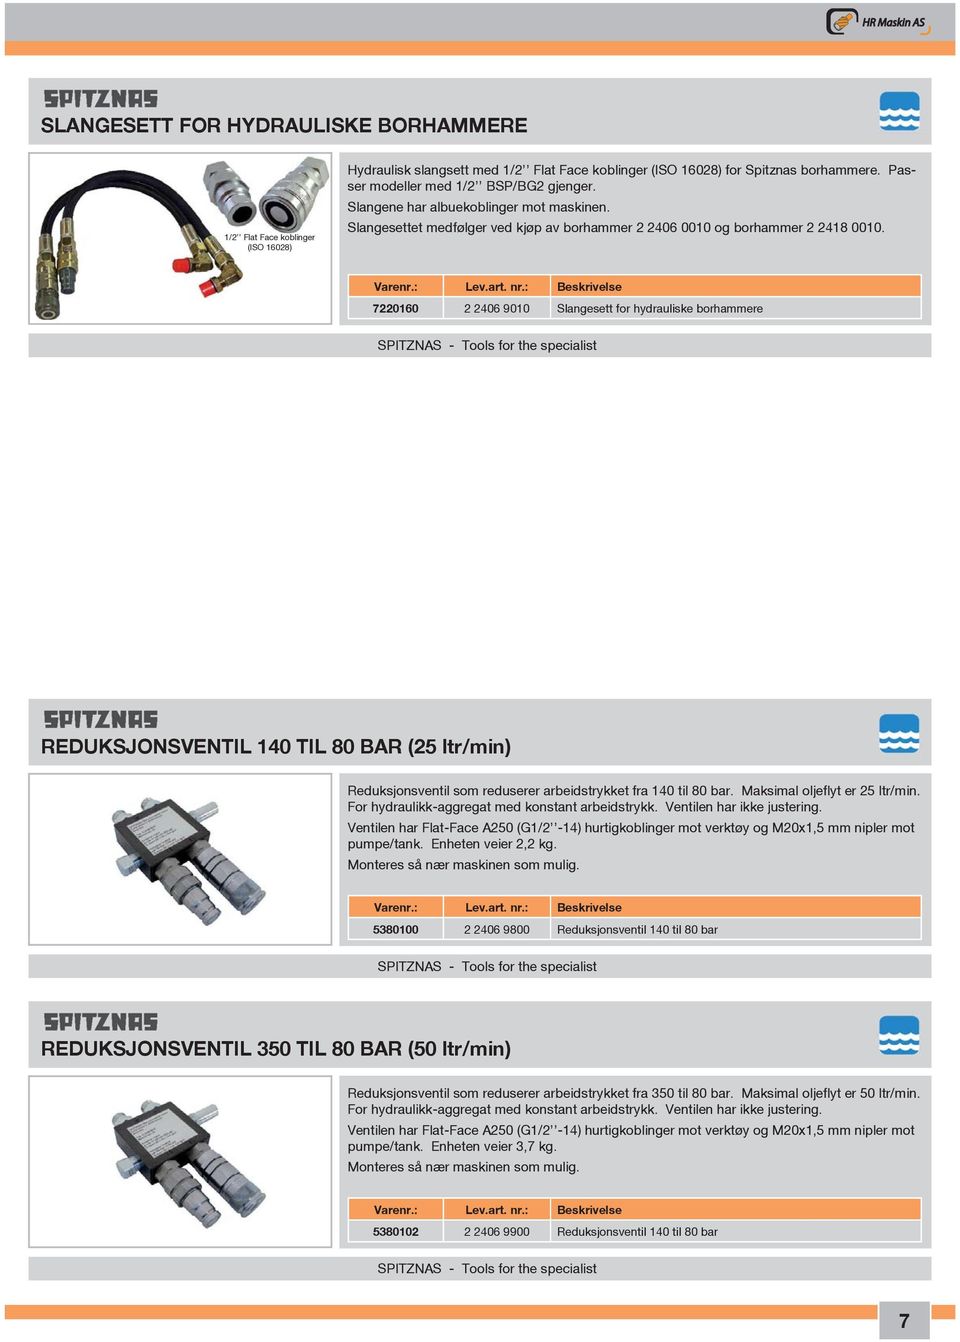 7220160 2 2406 9010 Slangesett for hydrauliske borhammere SPITZNAS - Tools for the specialist REDUKSJONSVENTIL 140 TIL 80 BAR (25 ltr/min) Reduksjonsventil som reduserer arbeidstrykket fra 140 til 80